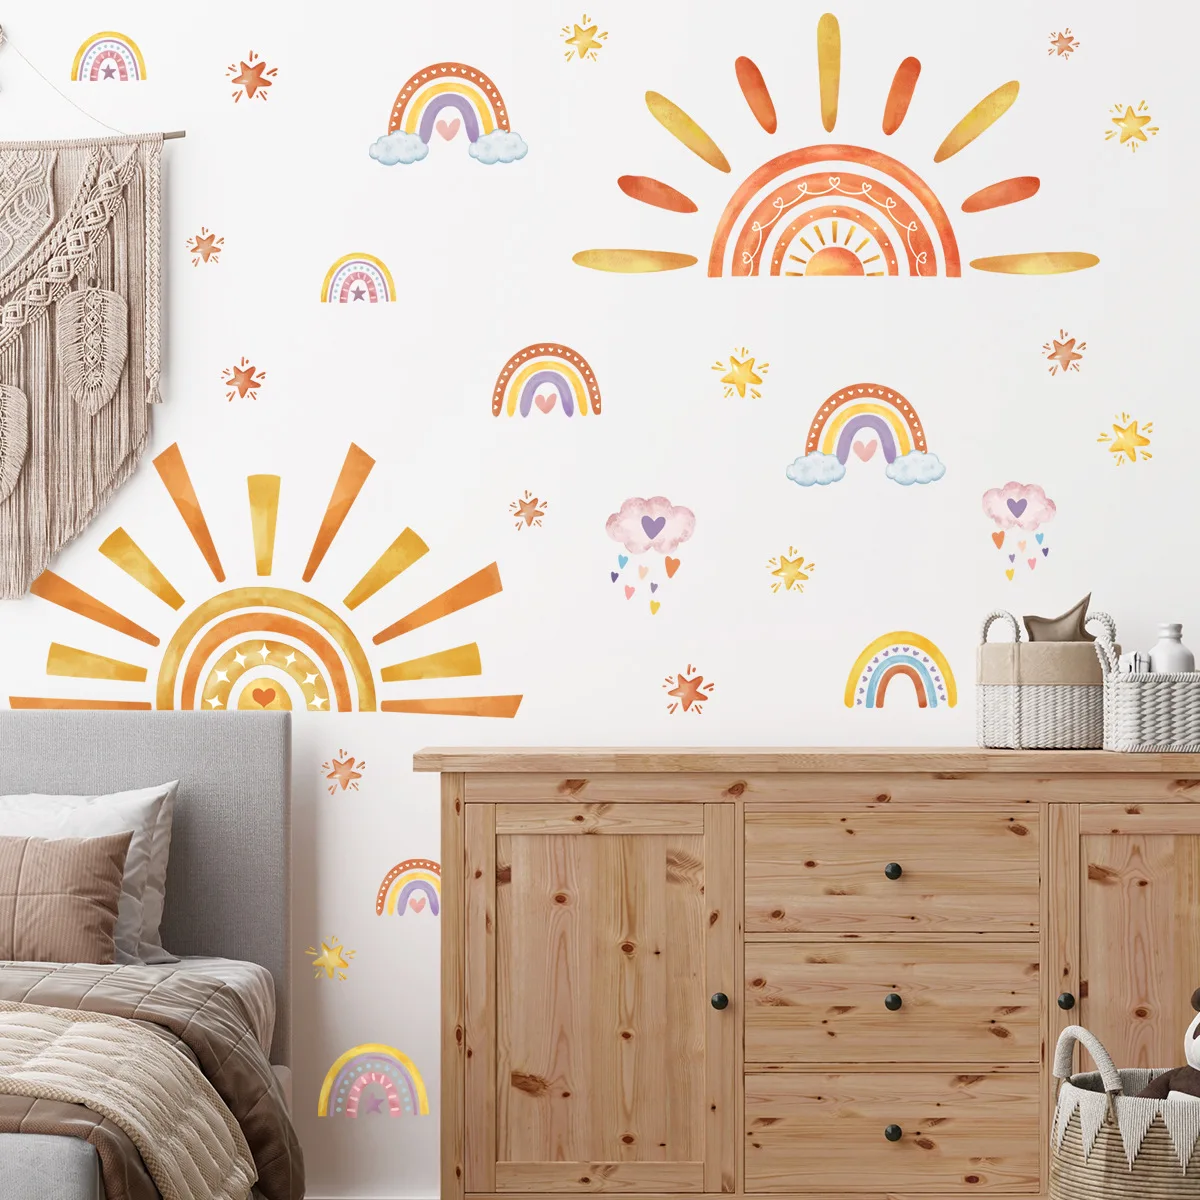 

Sun Wallpaper Kids Wall Stickers Nursery Self-Adhesive Kindergarten Children Baby's Room Bedroom Home Decor